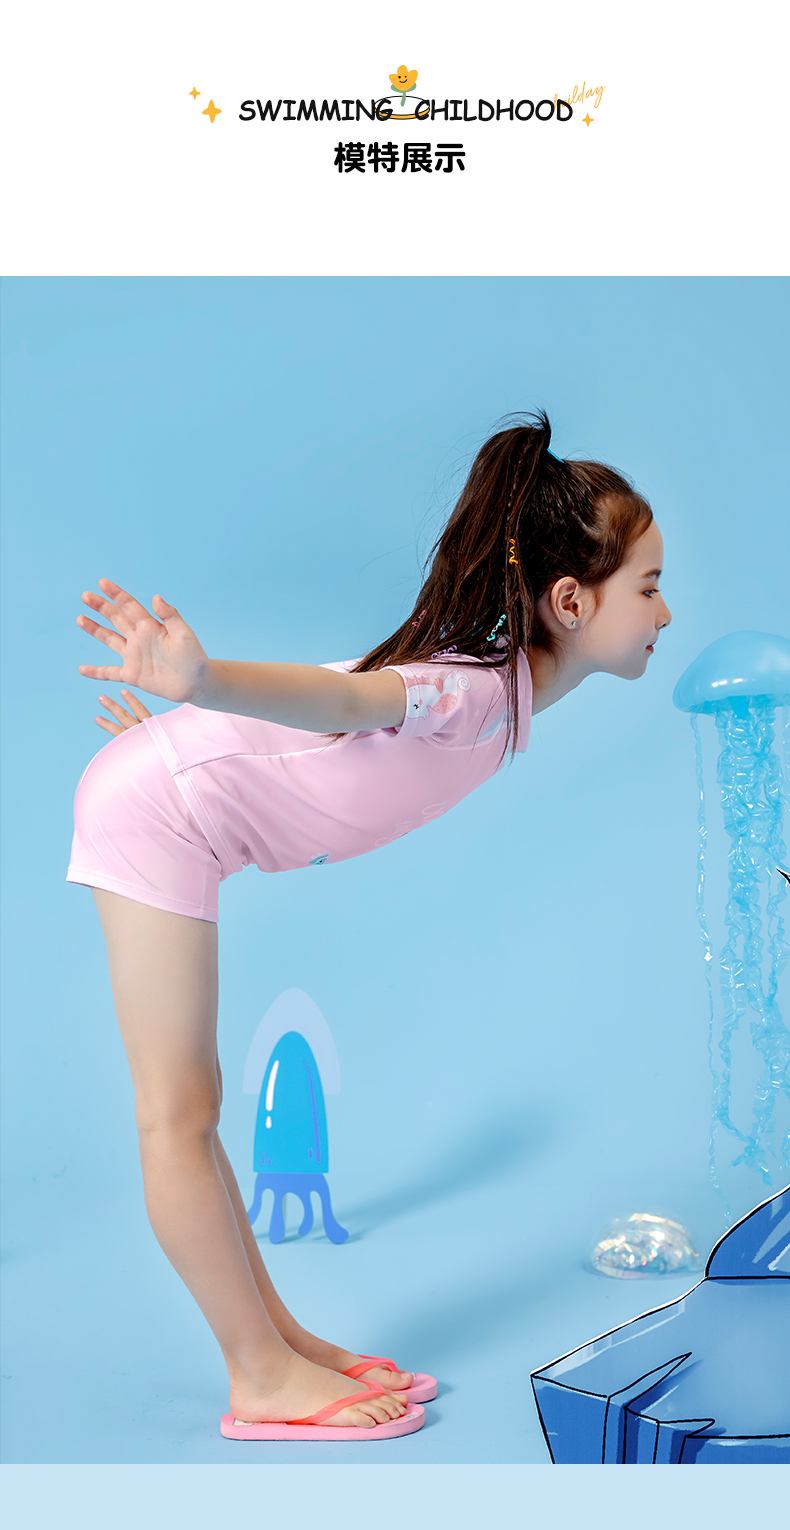 361度儿童分体泳衣女中大童游泳衣韩国女孩可爱公主宝宝防晒泳装淡